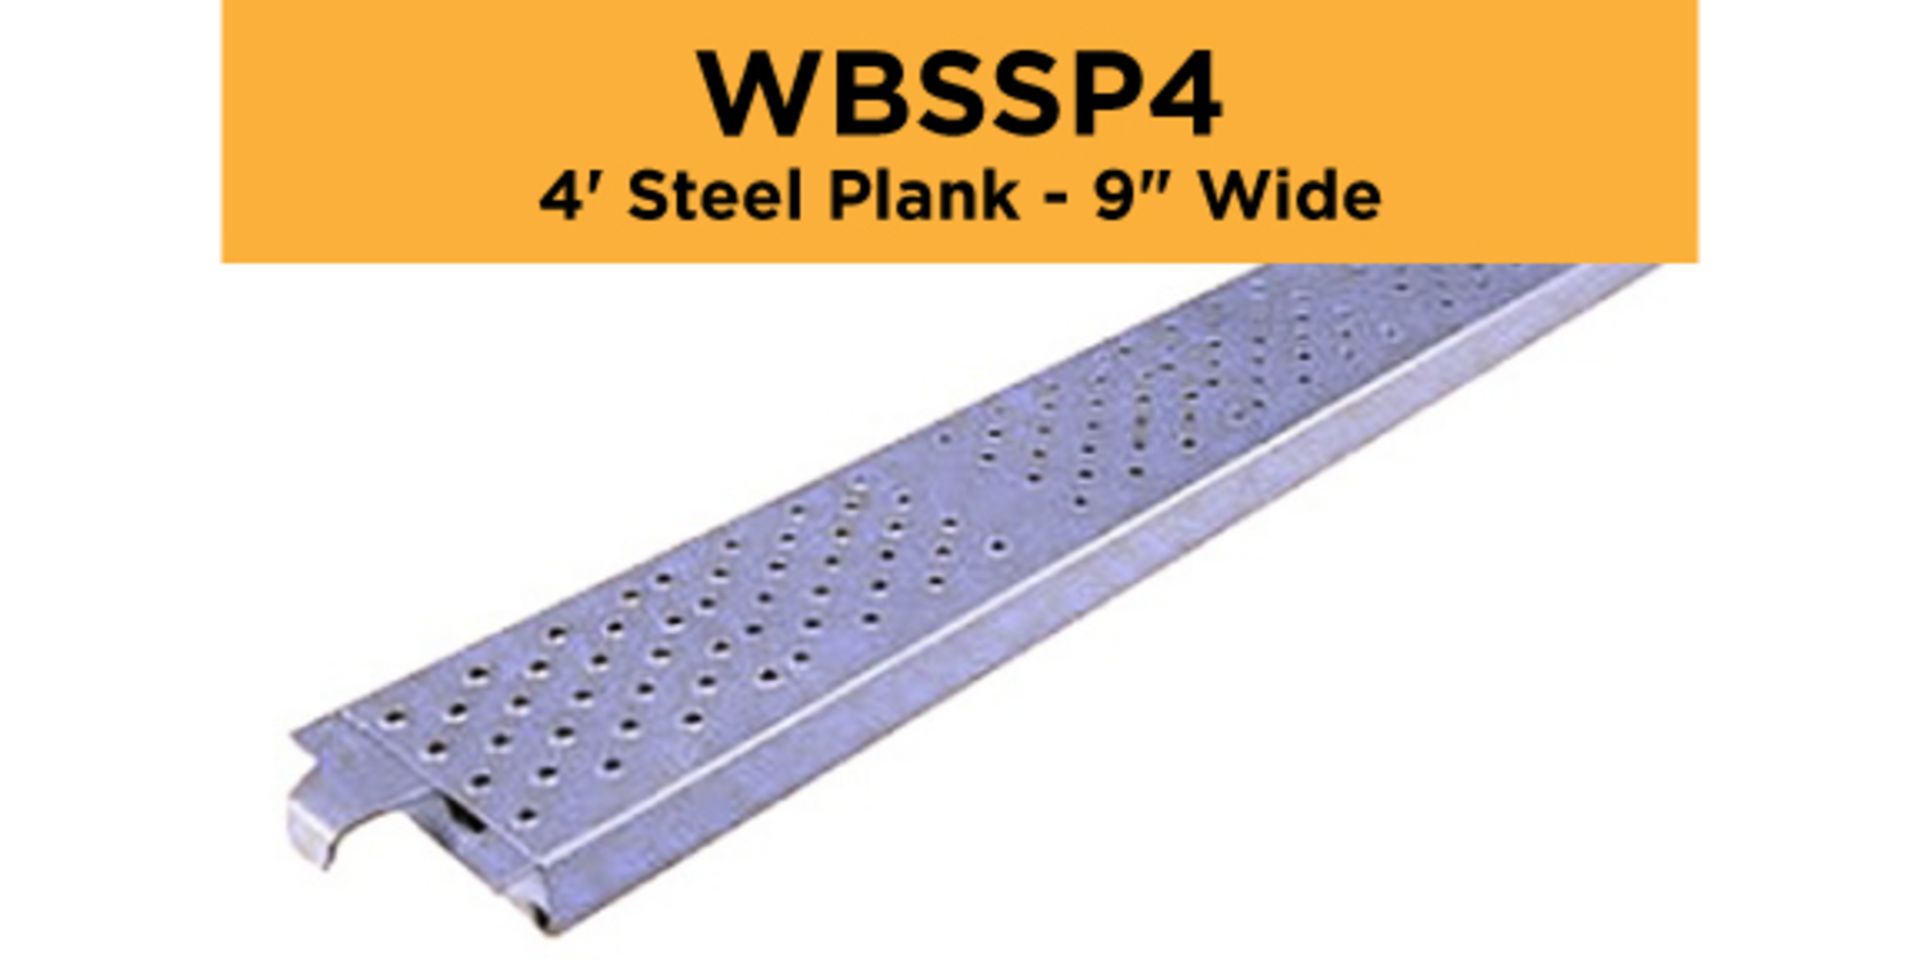 Lot of (256) 4' Steel Plank - 9" Wide - Bay Length 48" (1.22M); Type: WBSSP4 - (4) Racks Per Lot -